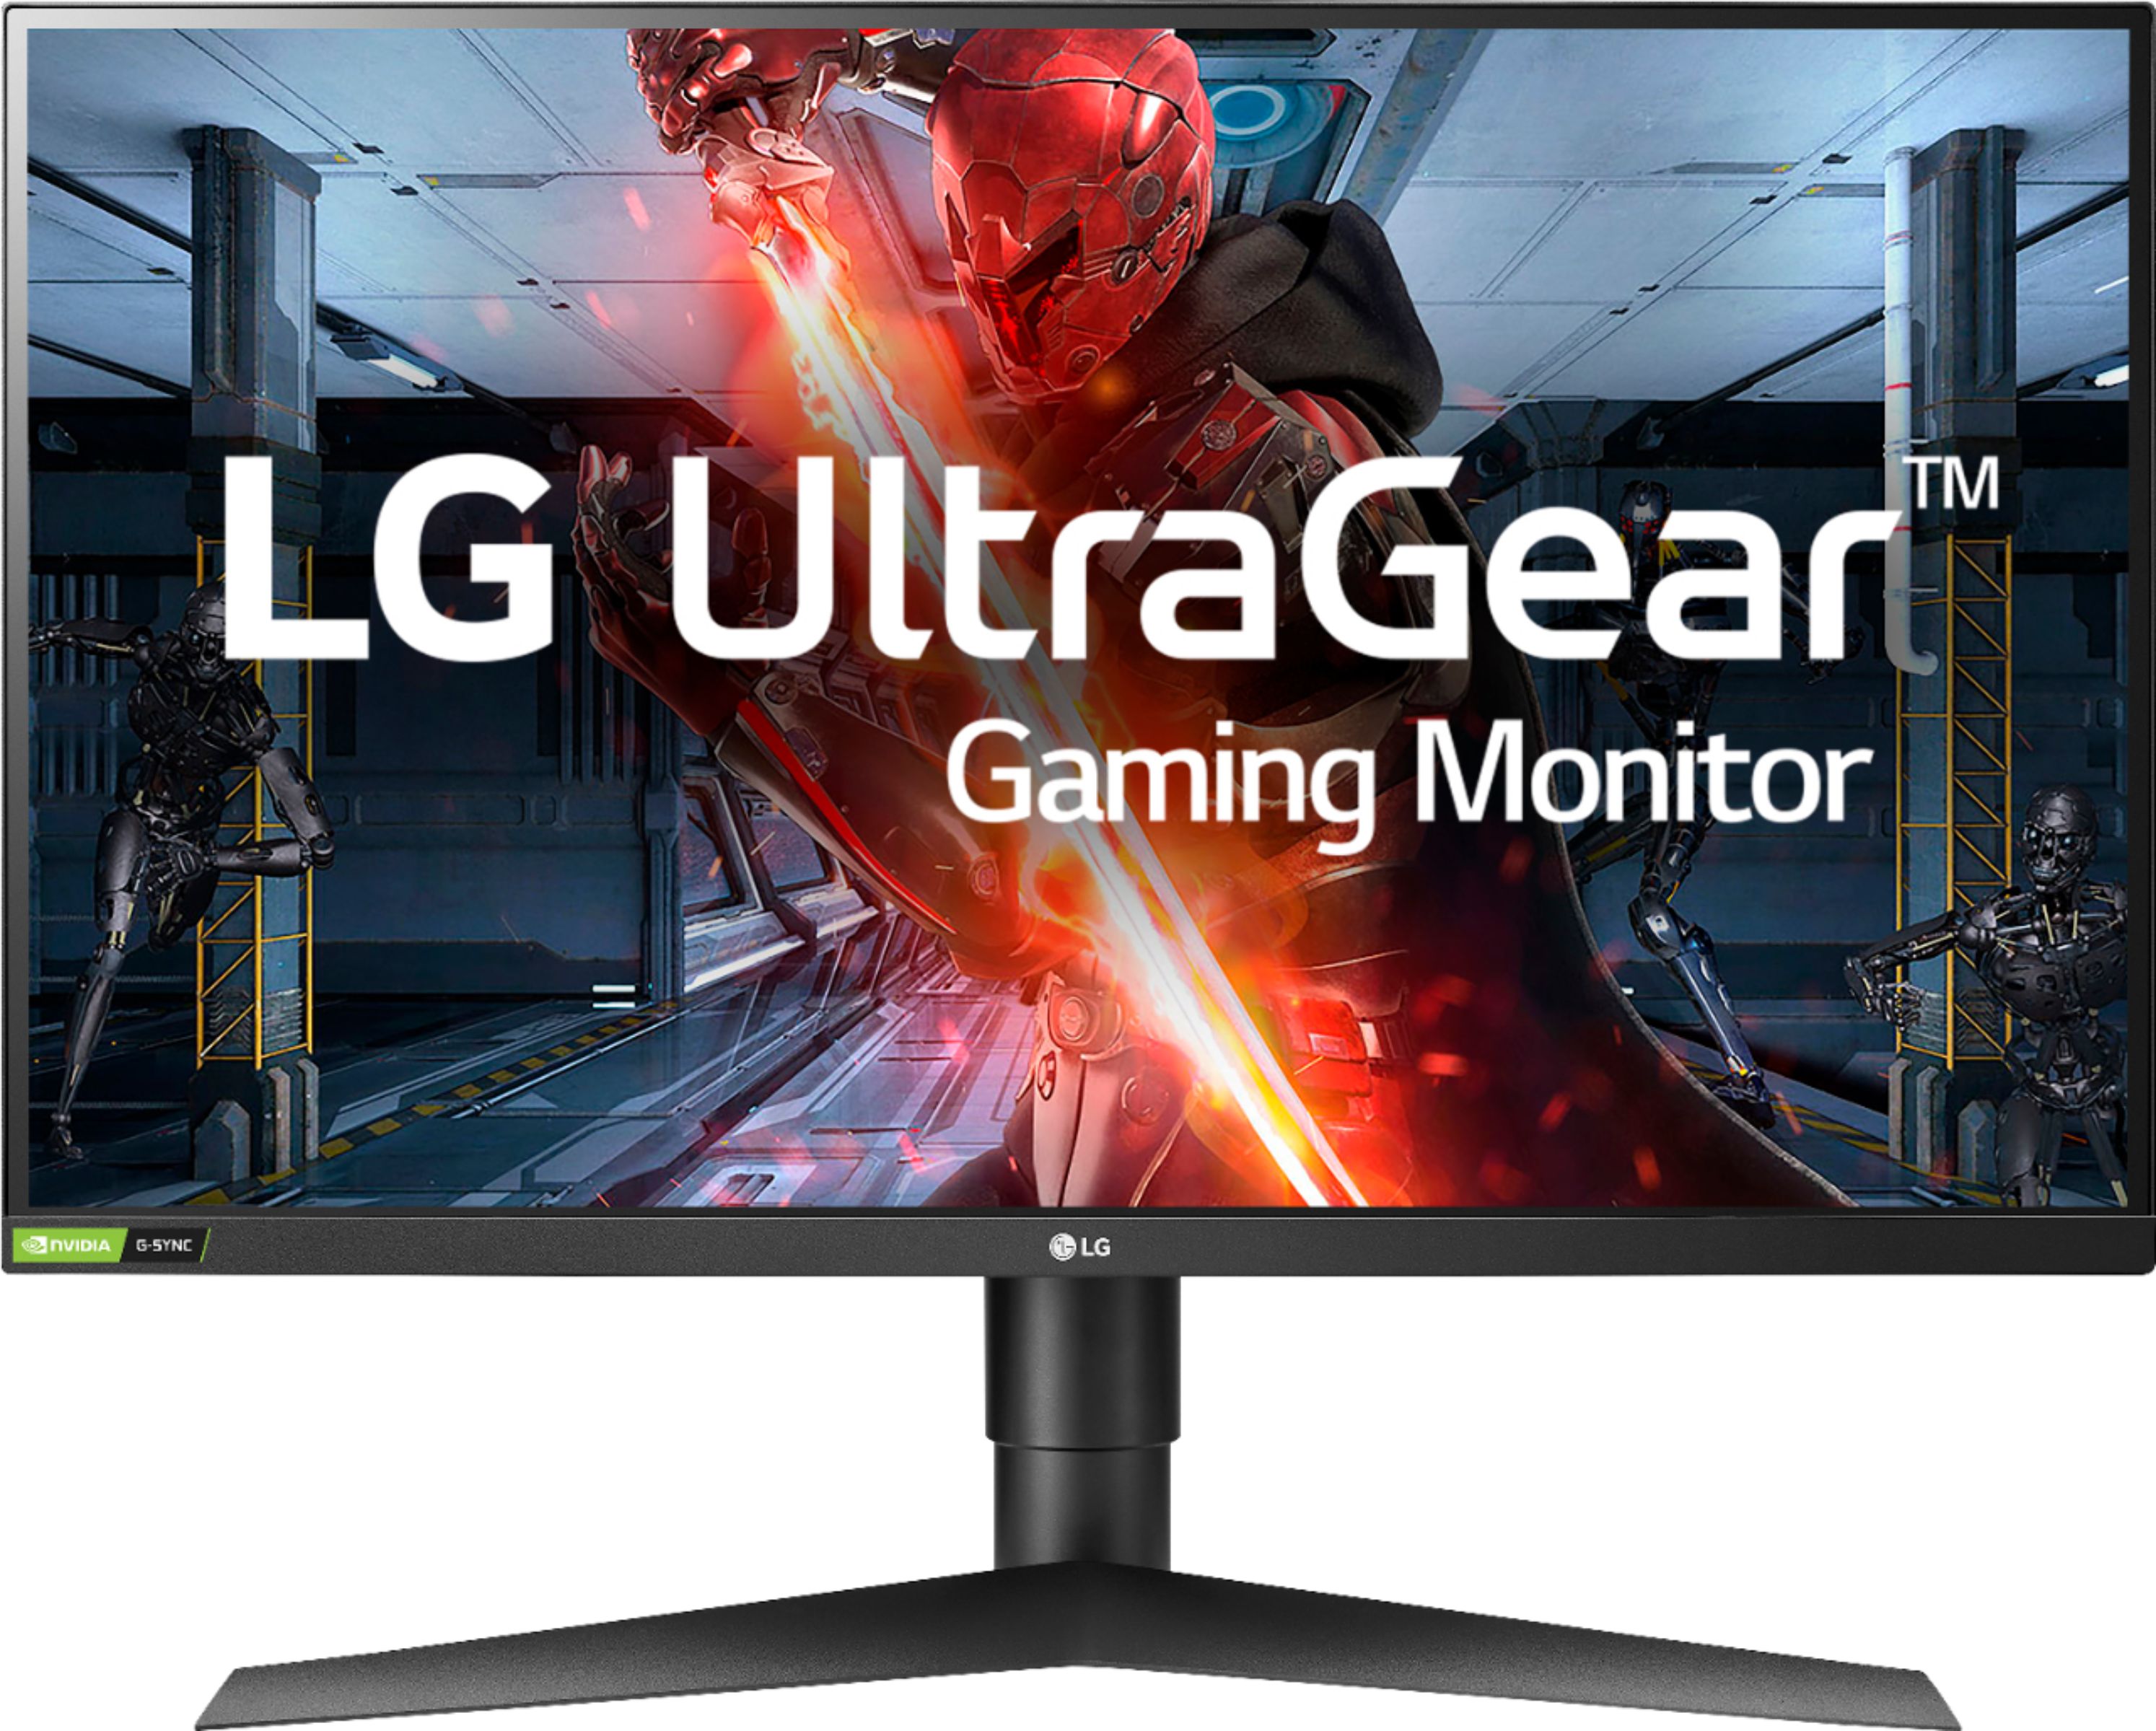 El monitor gaming LG UltraGear, ahora mucho más barato que nunca